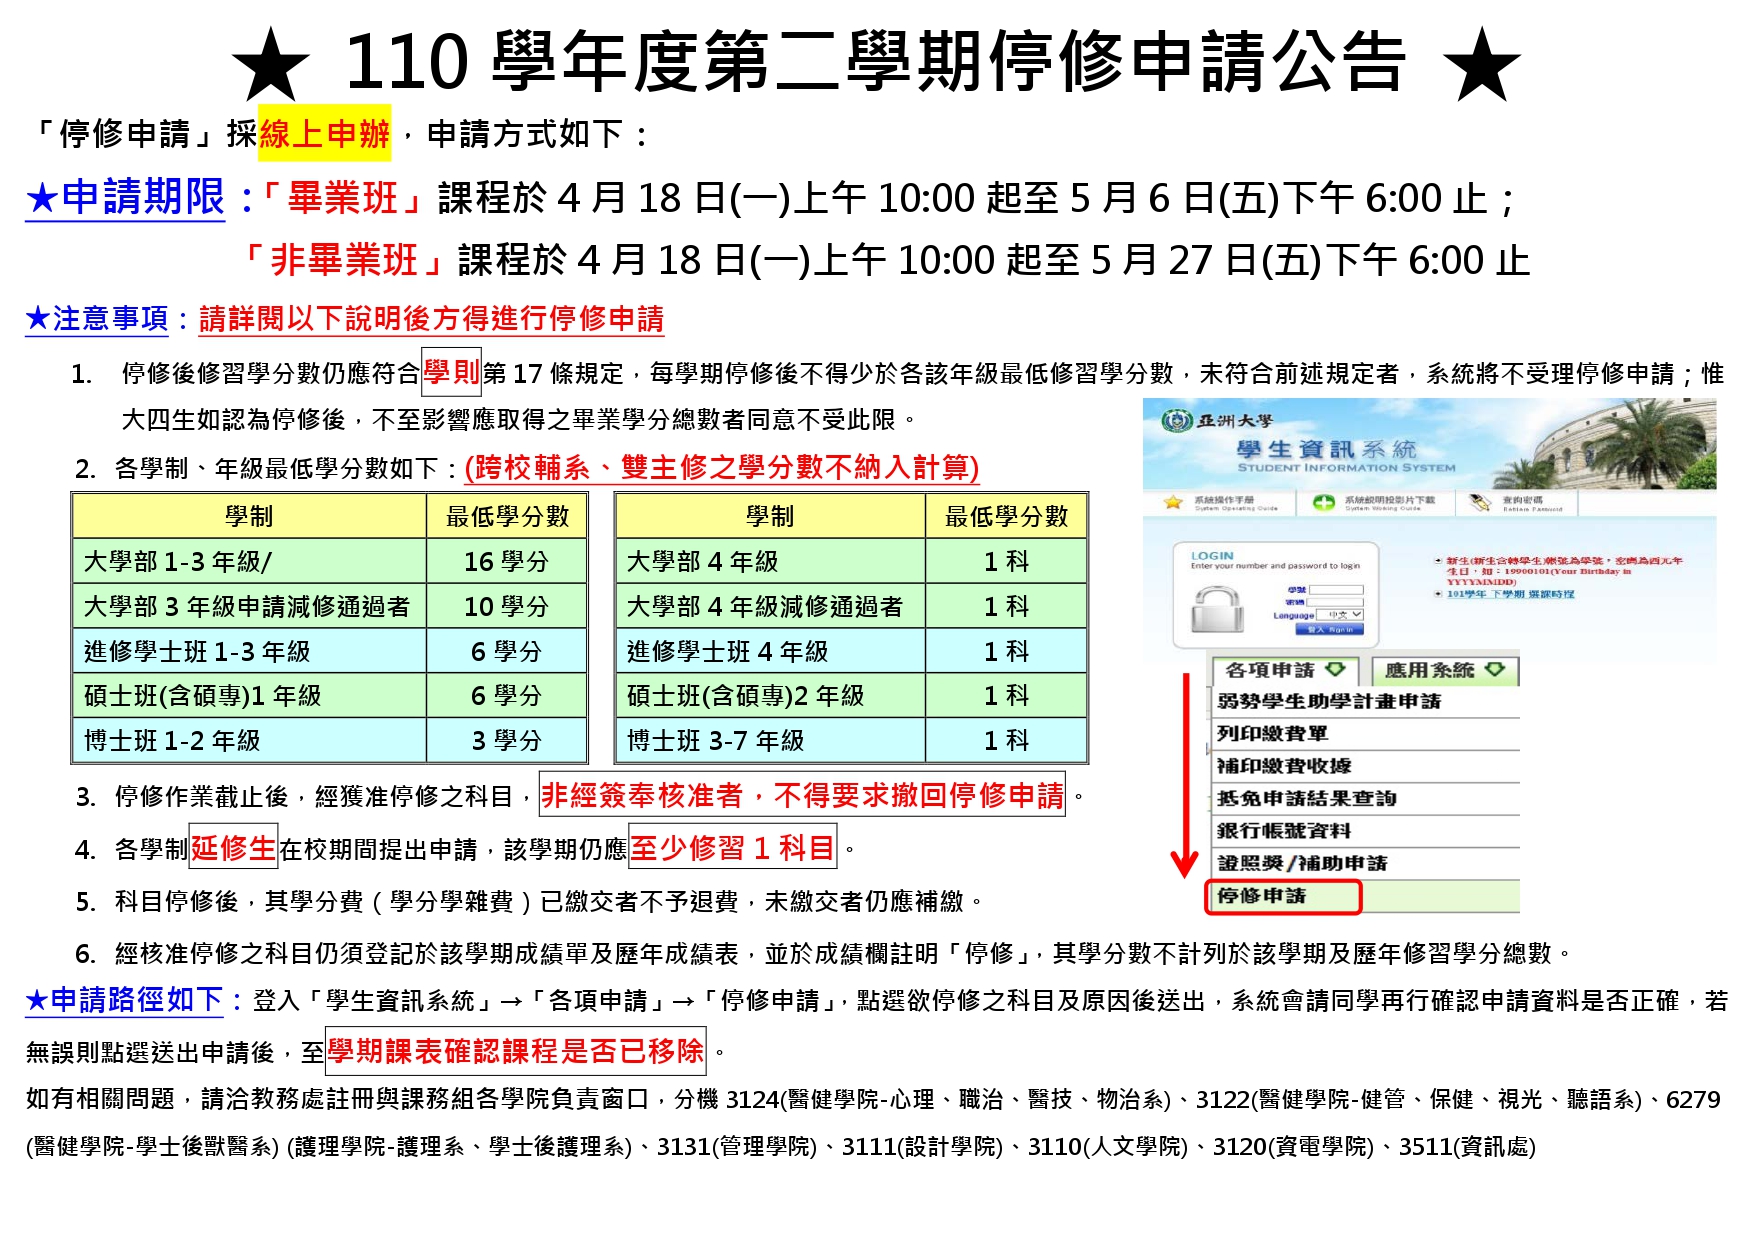 110-2停修申請公告_中文A4_page-0001